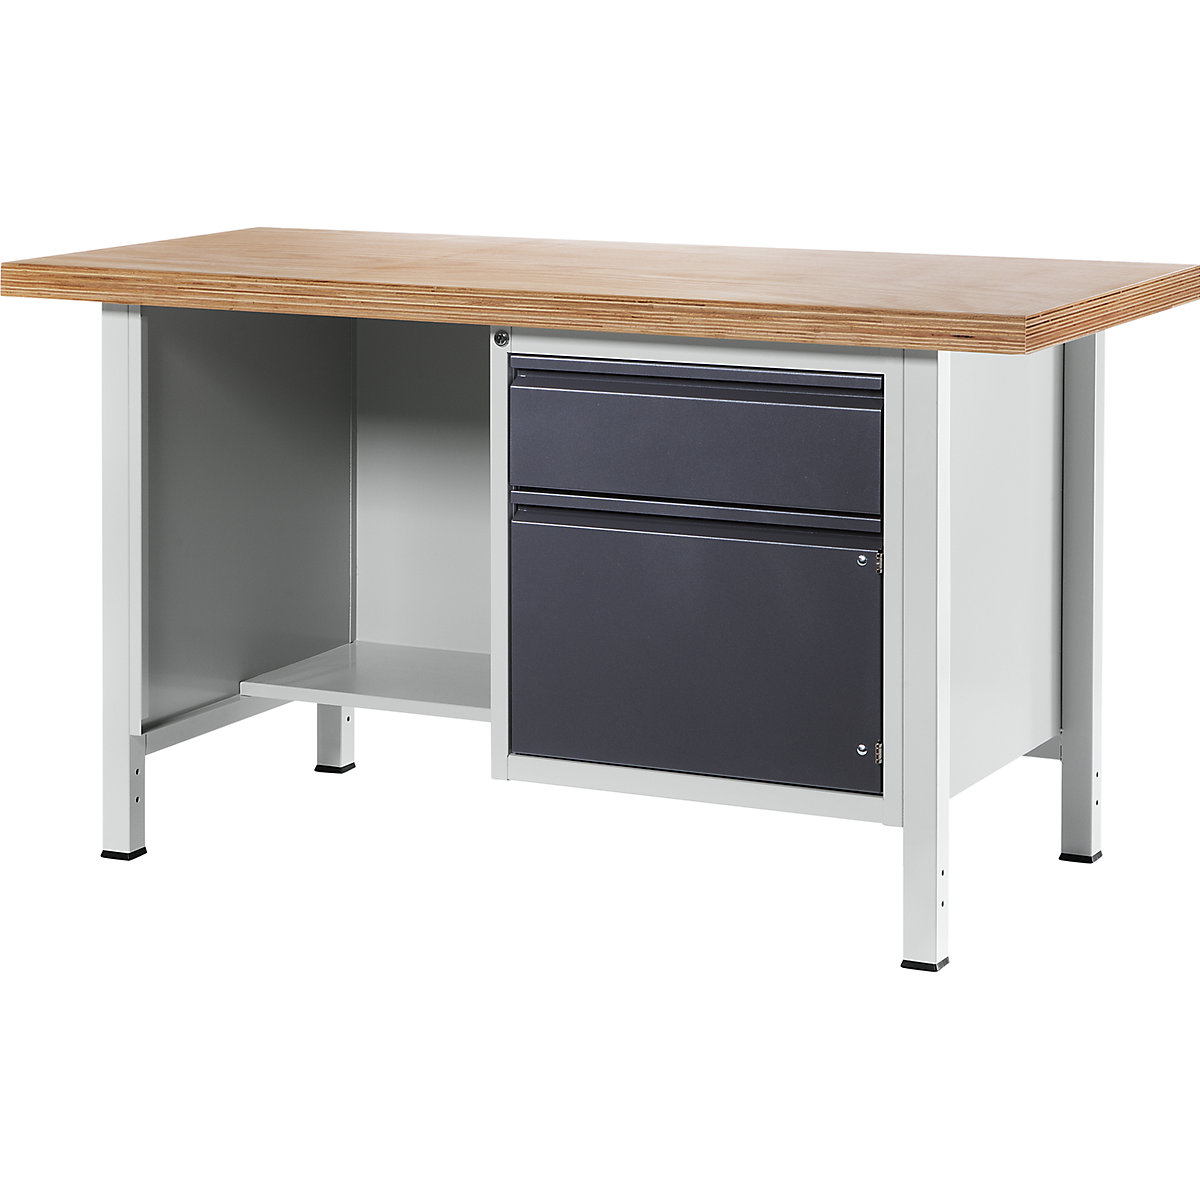 Dílenský stůl s rámovou konstrukcí – RAU, 1 zásuvka, 1 dveře, 1 otevřený oddíl s odsazenou policí, šířka desky 1500 mm, antracitová metalíza-8